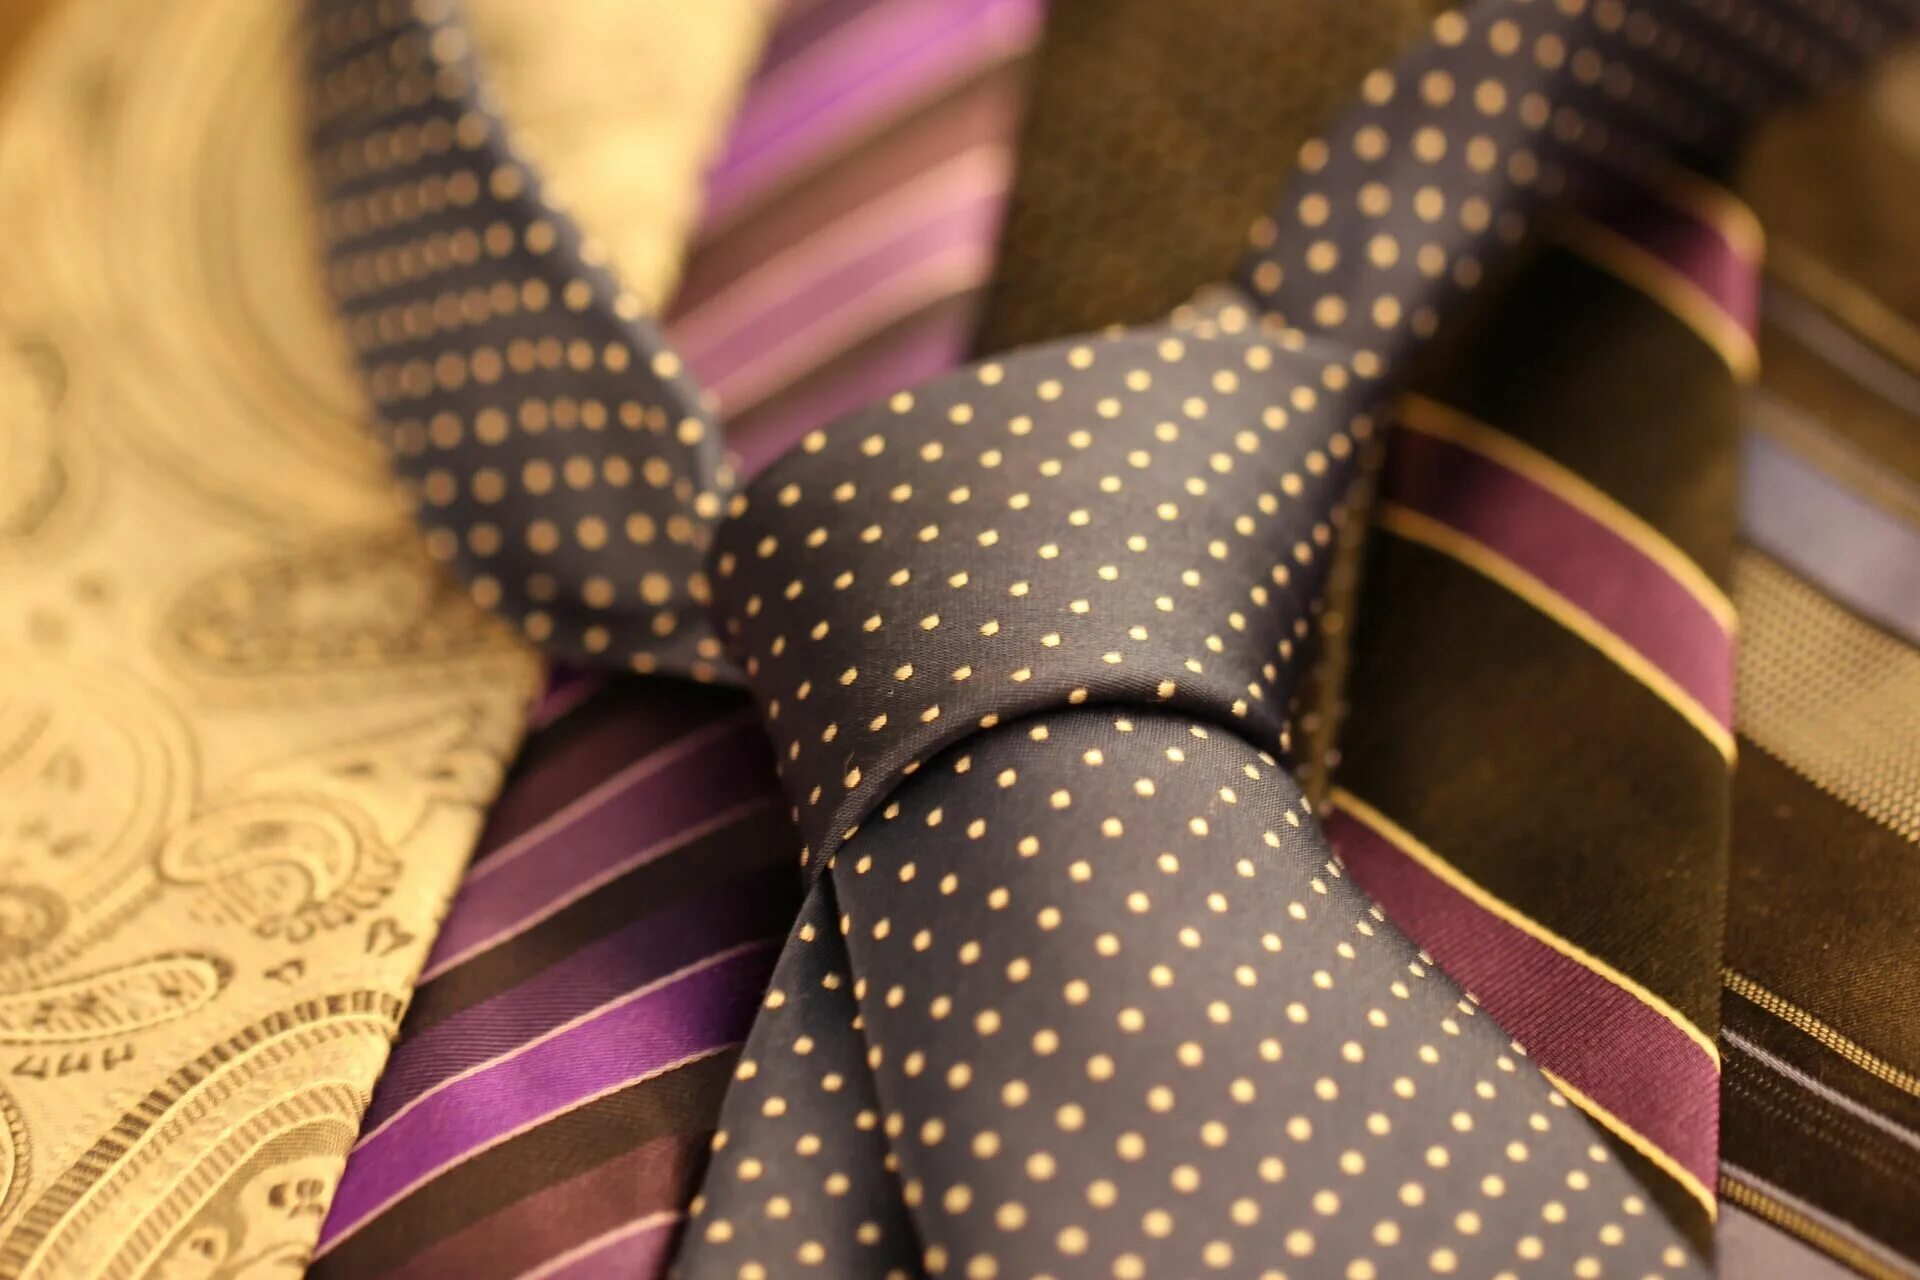 Галстук нотариуса что это. Галстук мужской. Яркий галстук. Старомодный галстук мужской. Галстук исторический.